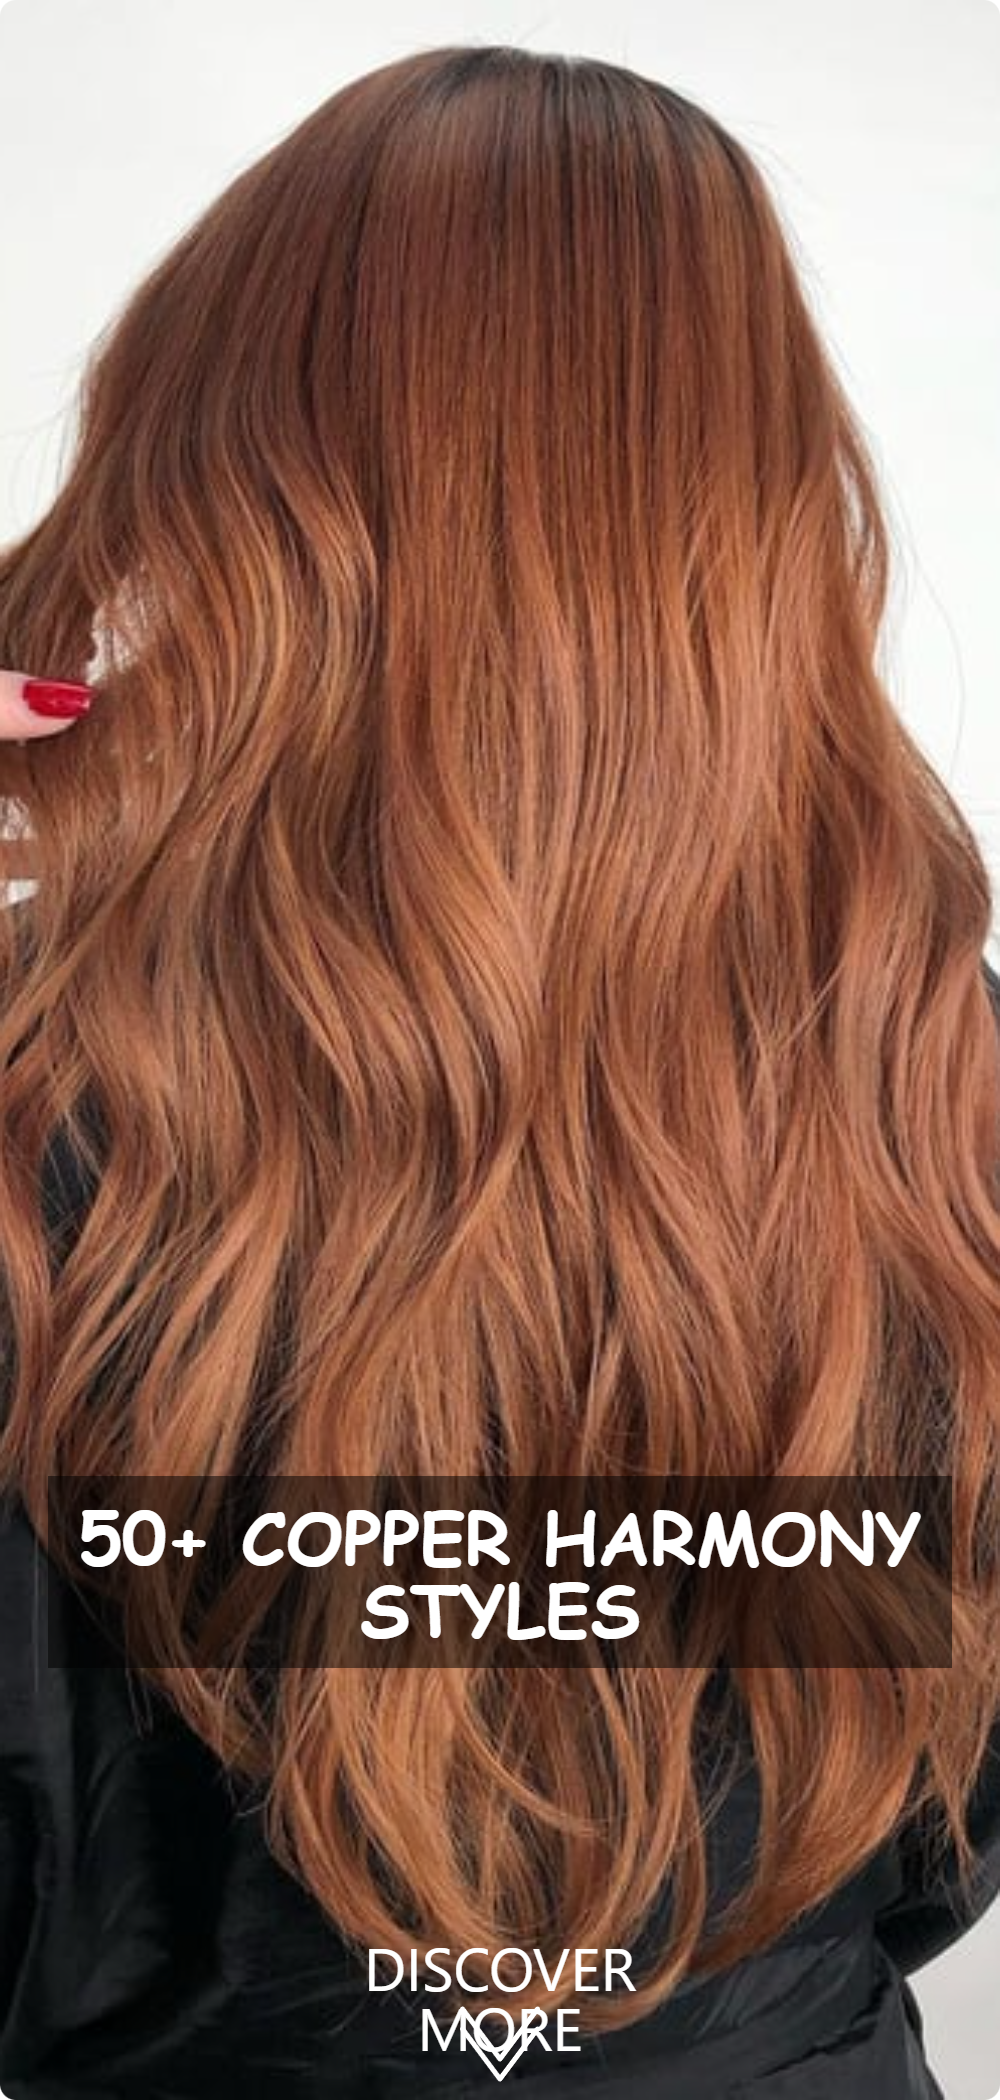 Copper Harmony